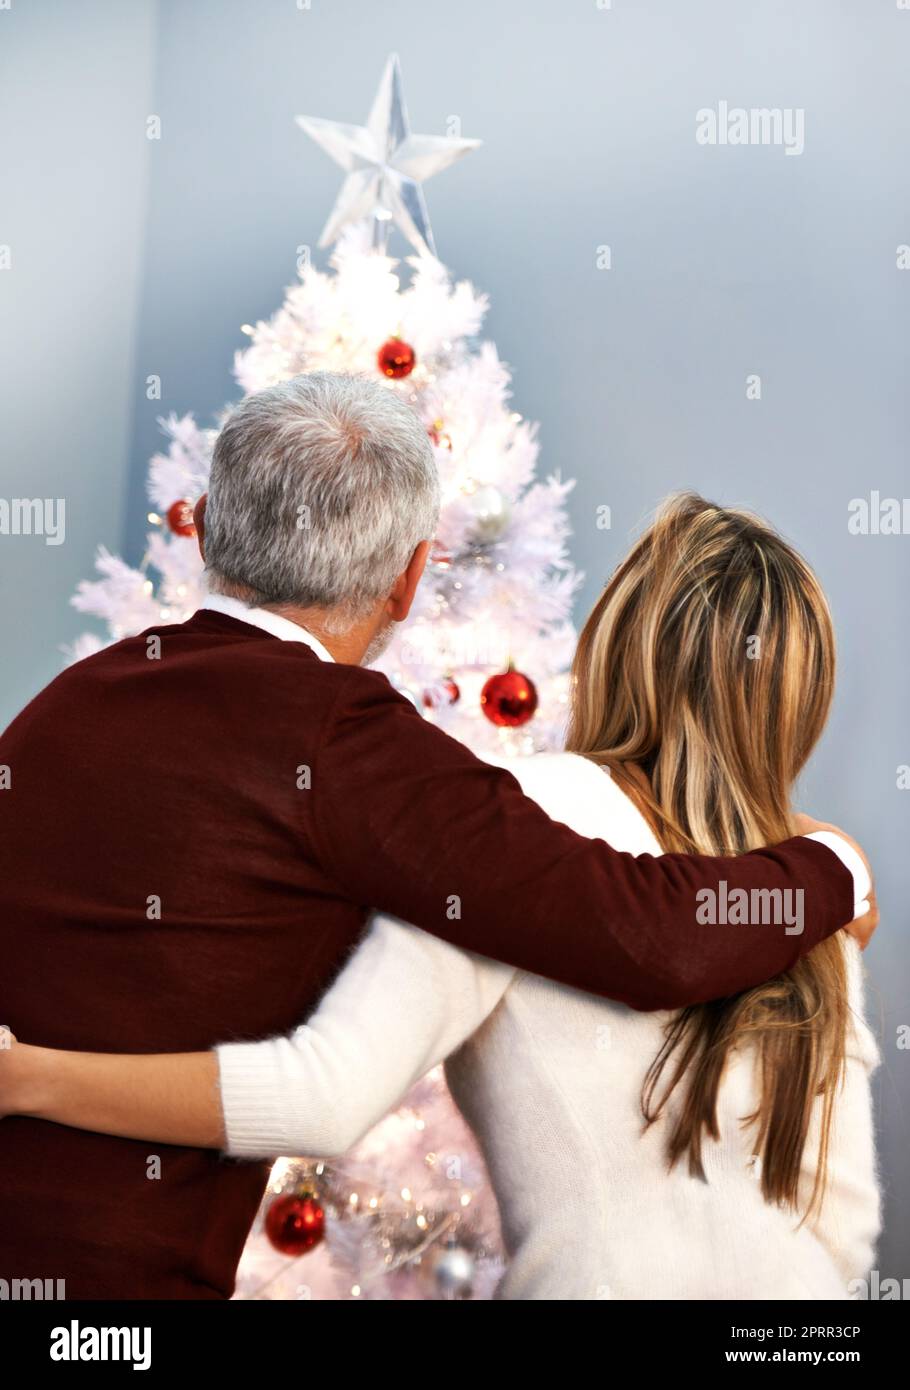 Moments précieux en famille à Christmastime. Vue arrière d'un couple collé par leur arbre de Noël. Banque D'Images